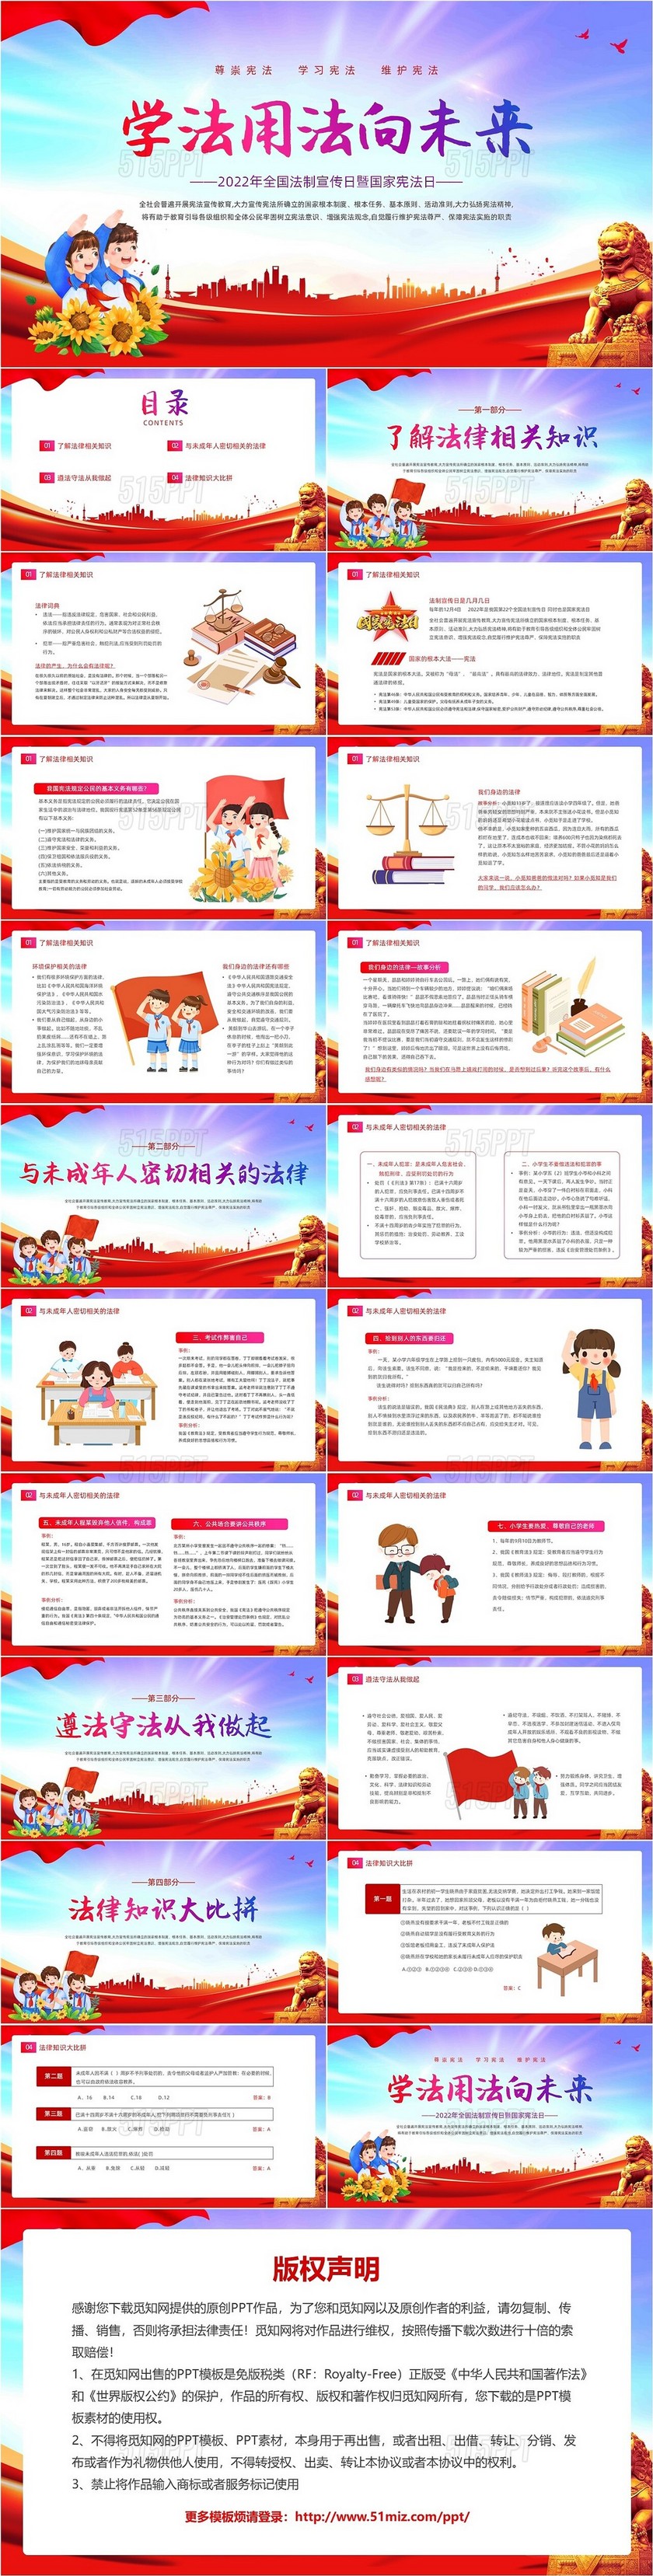 炫彩渐变红色大气卡通插画国家宪法日主题宣传动态PPT